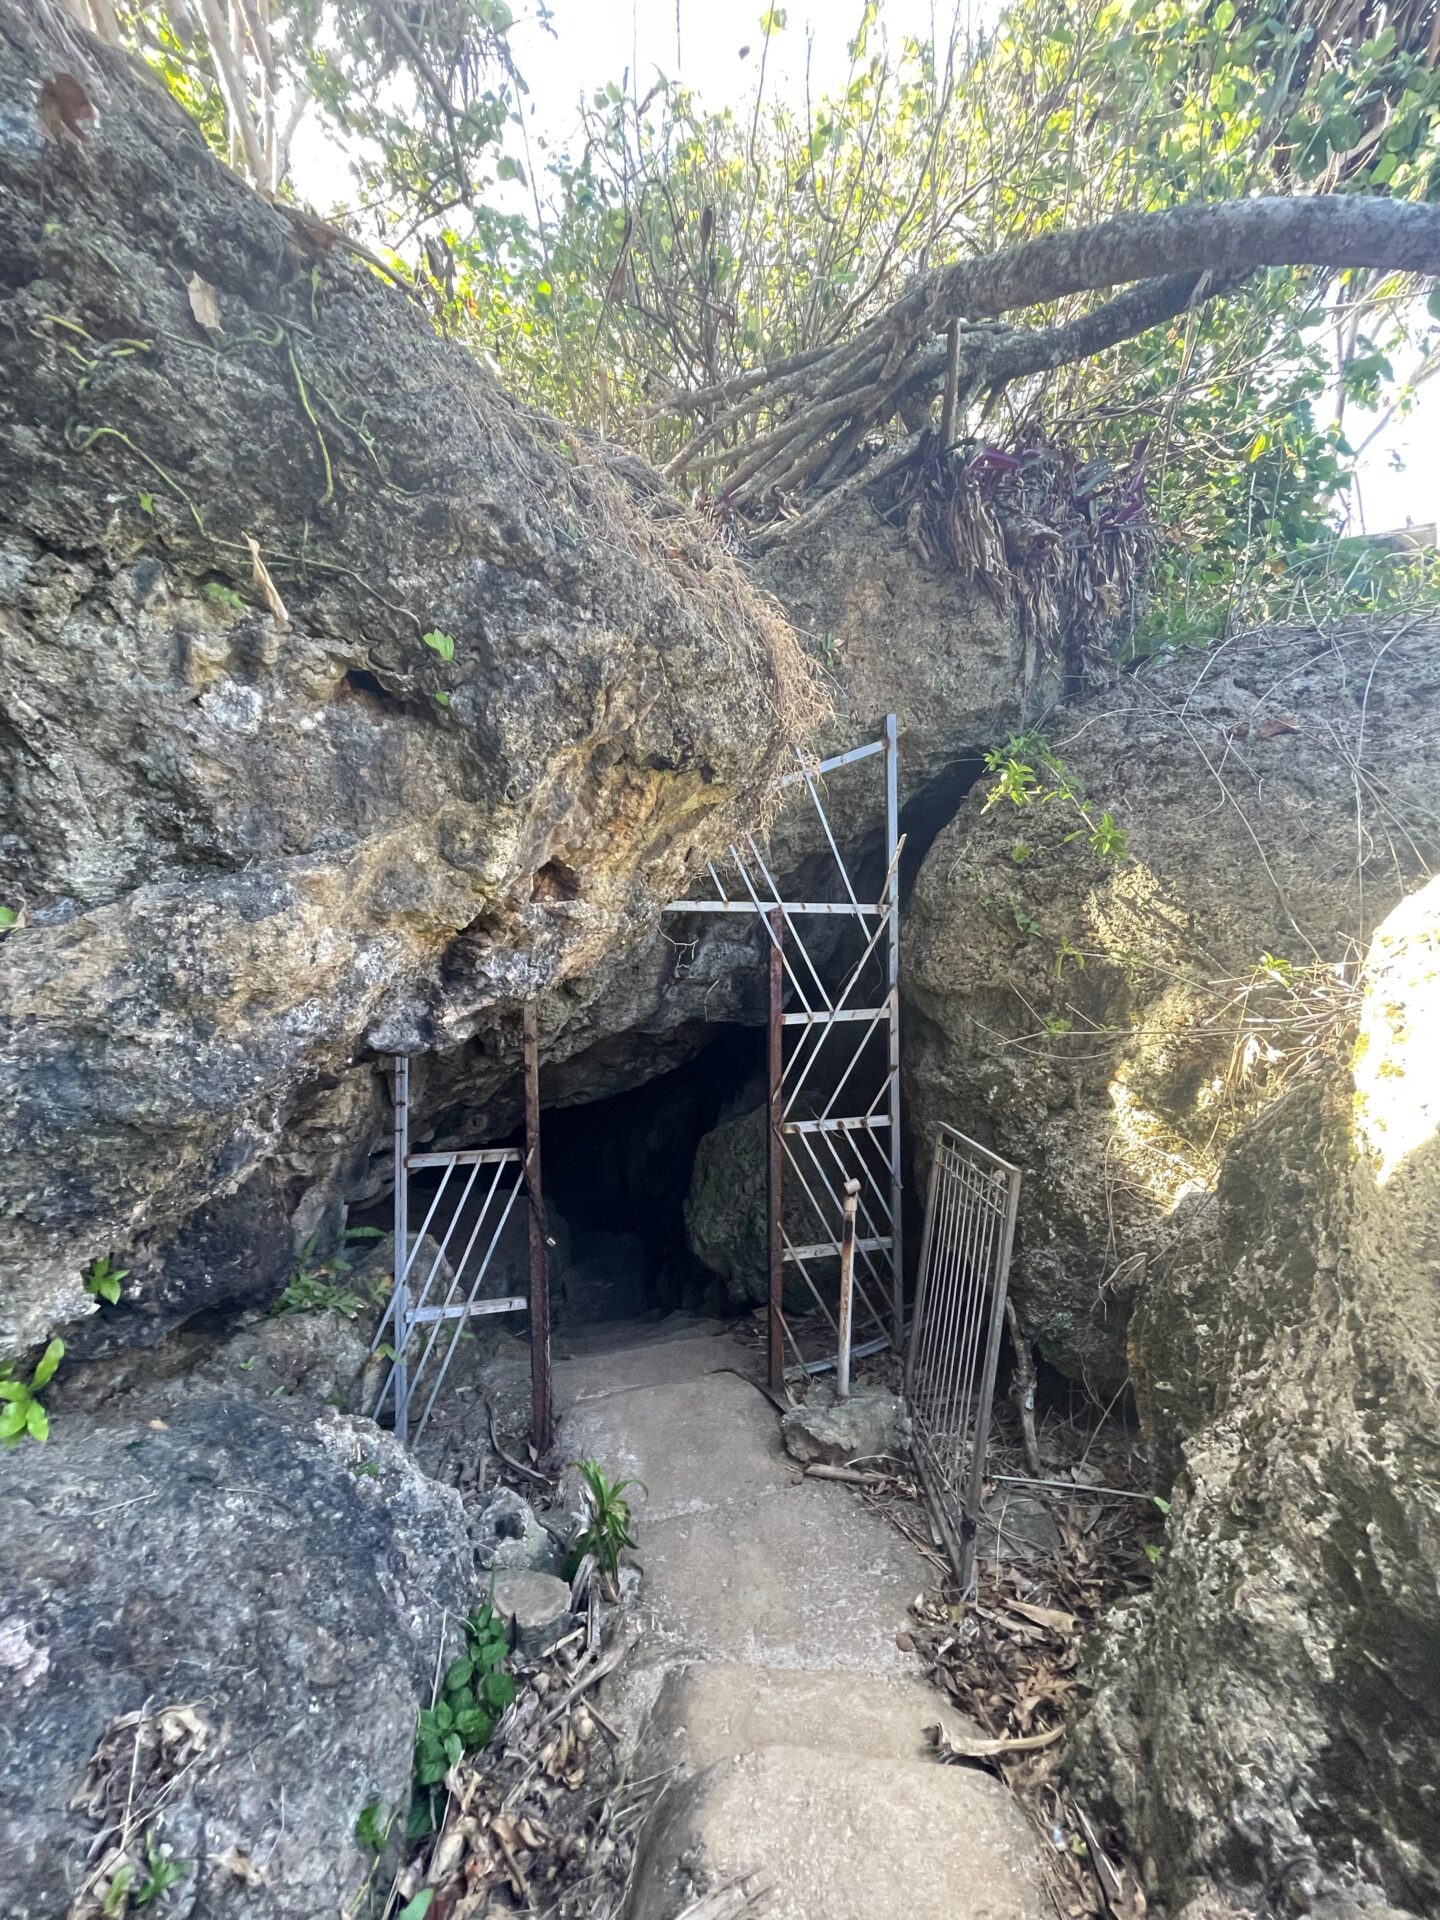 a metal gate in a cave